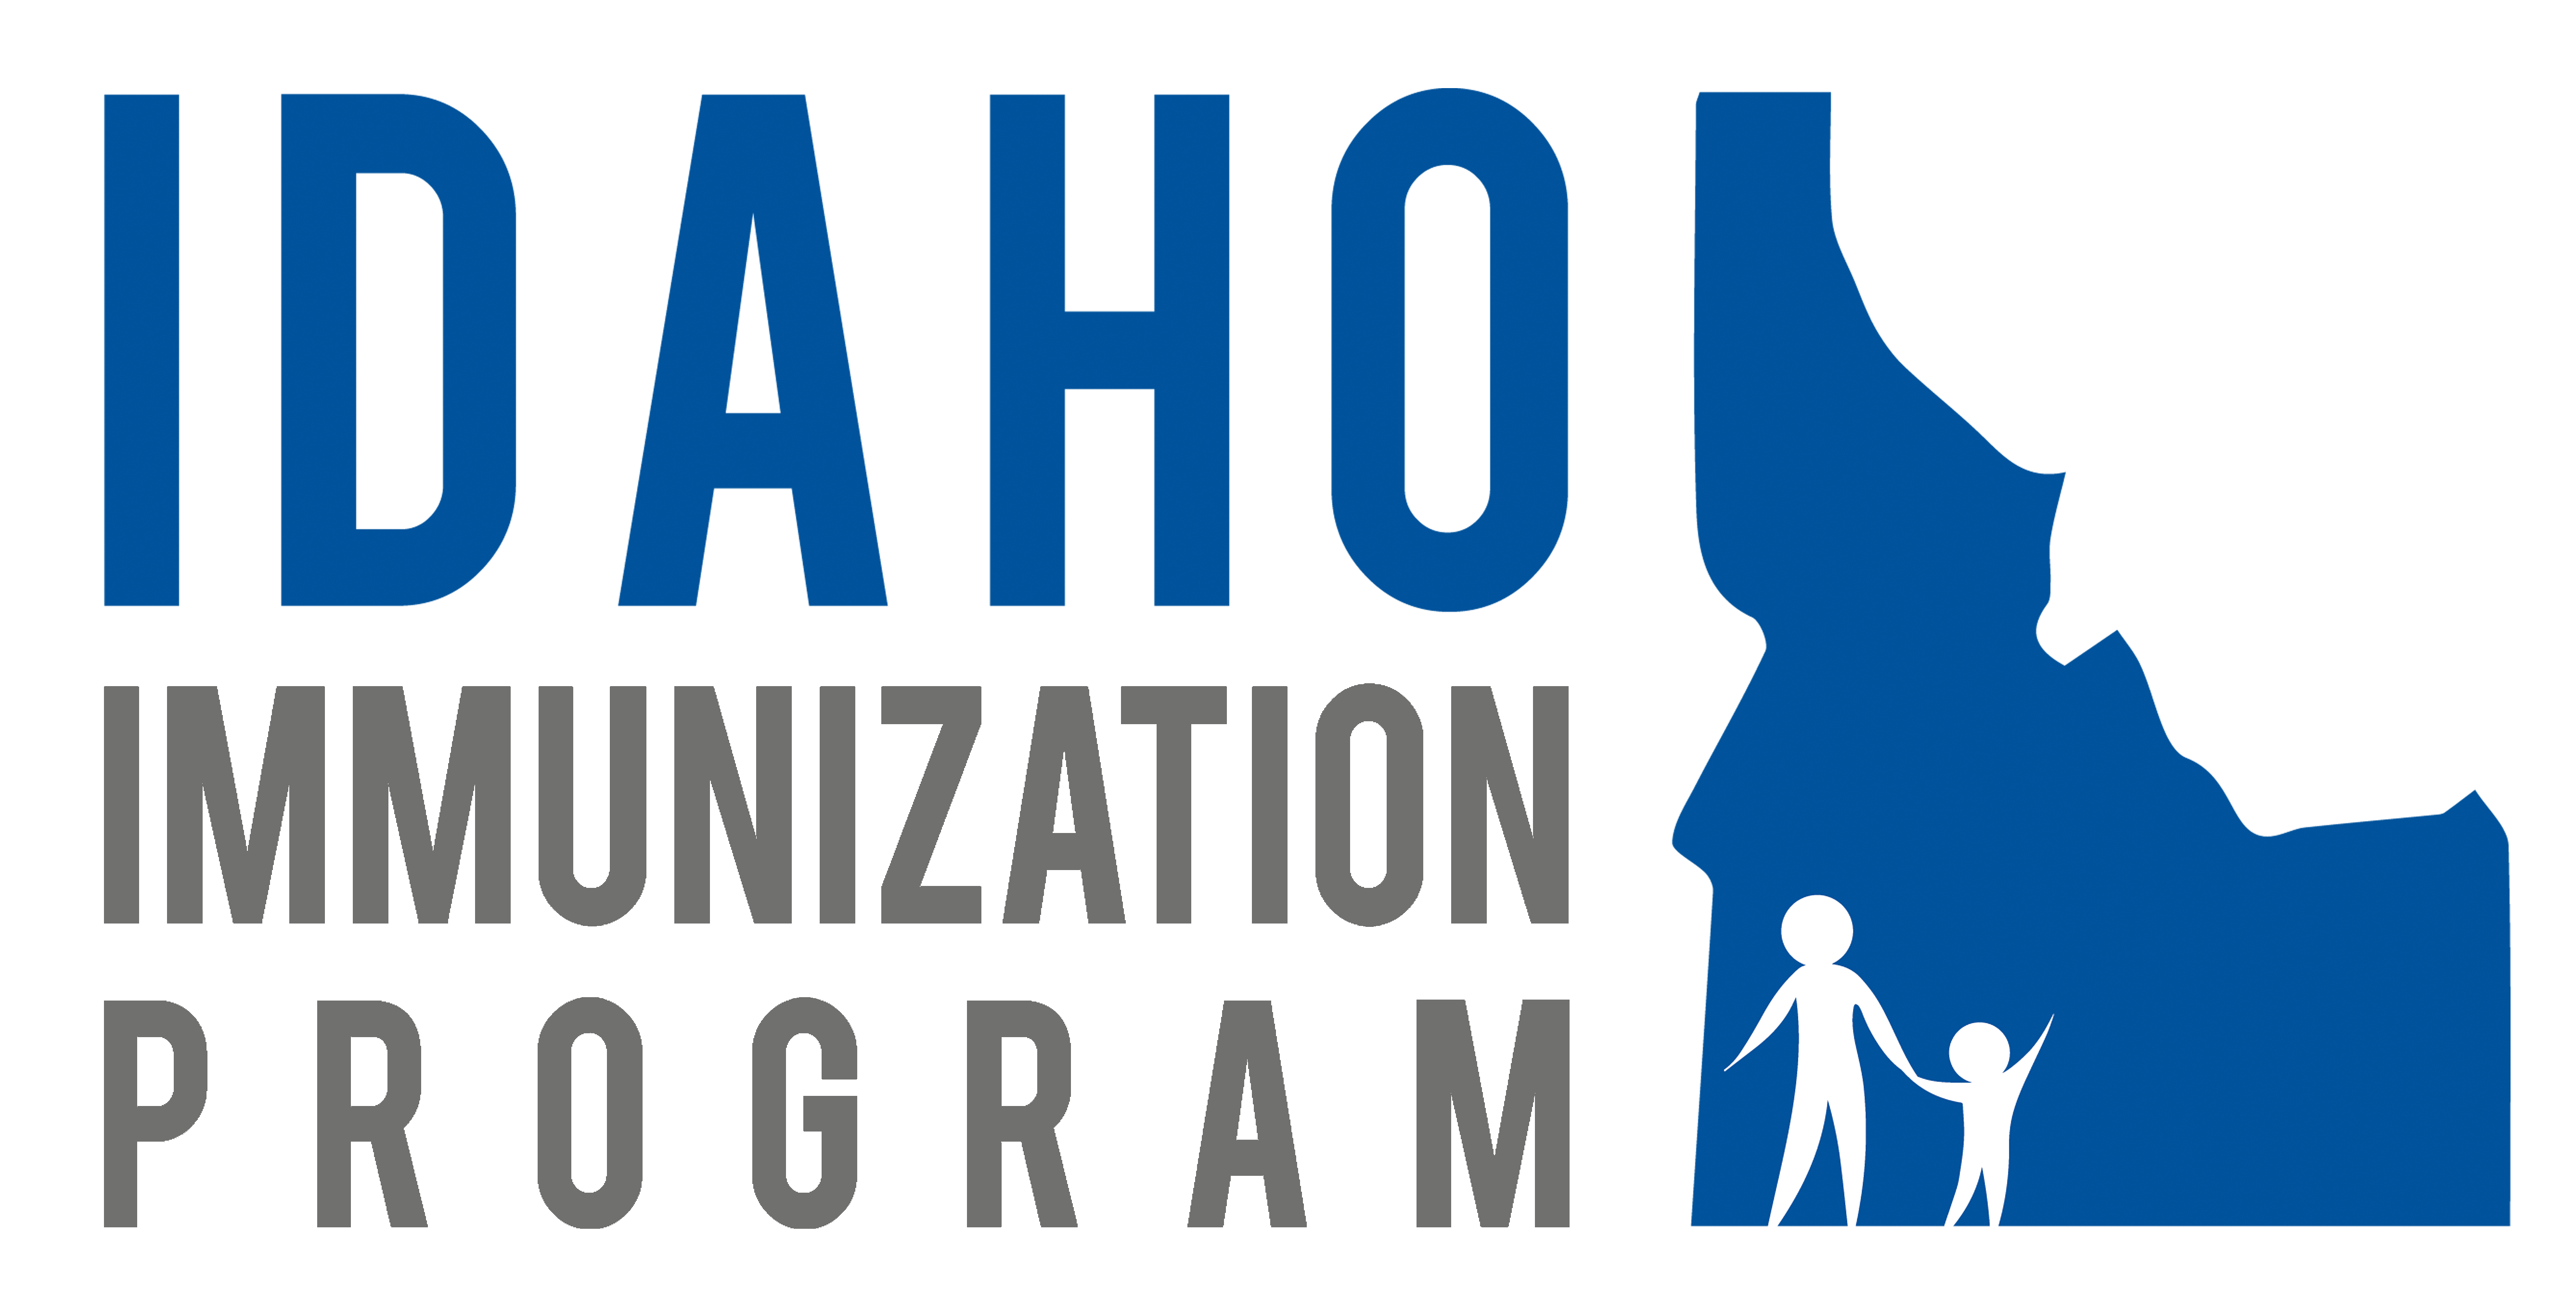 Idaho Immunization Program Logo